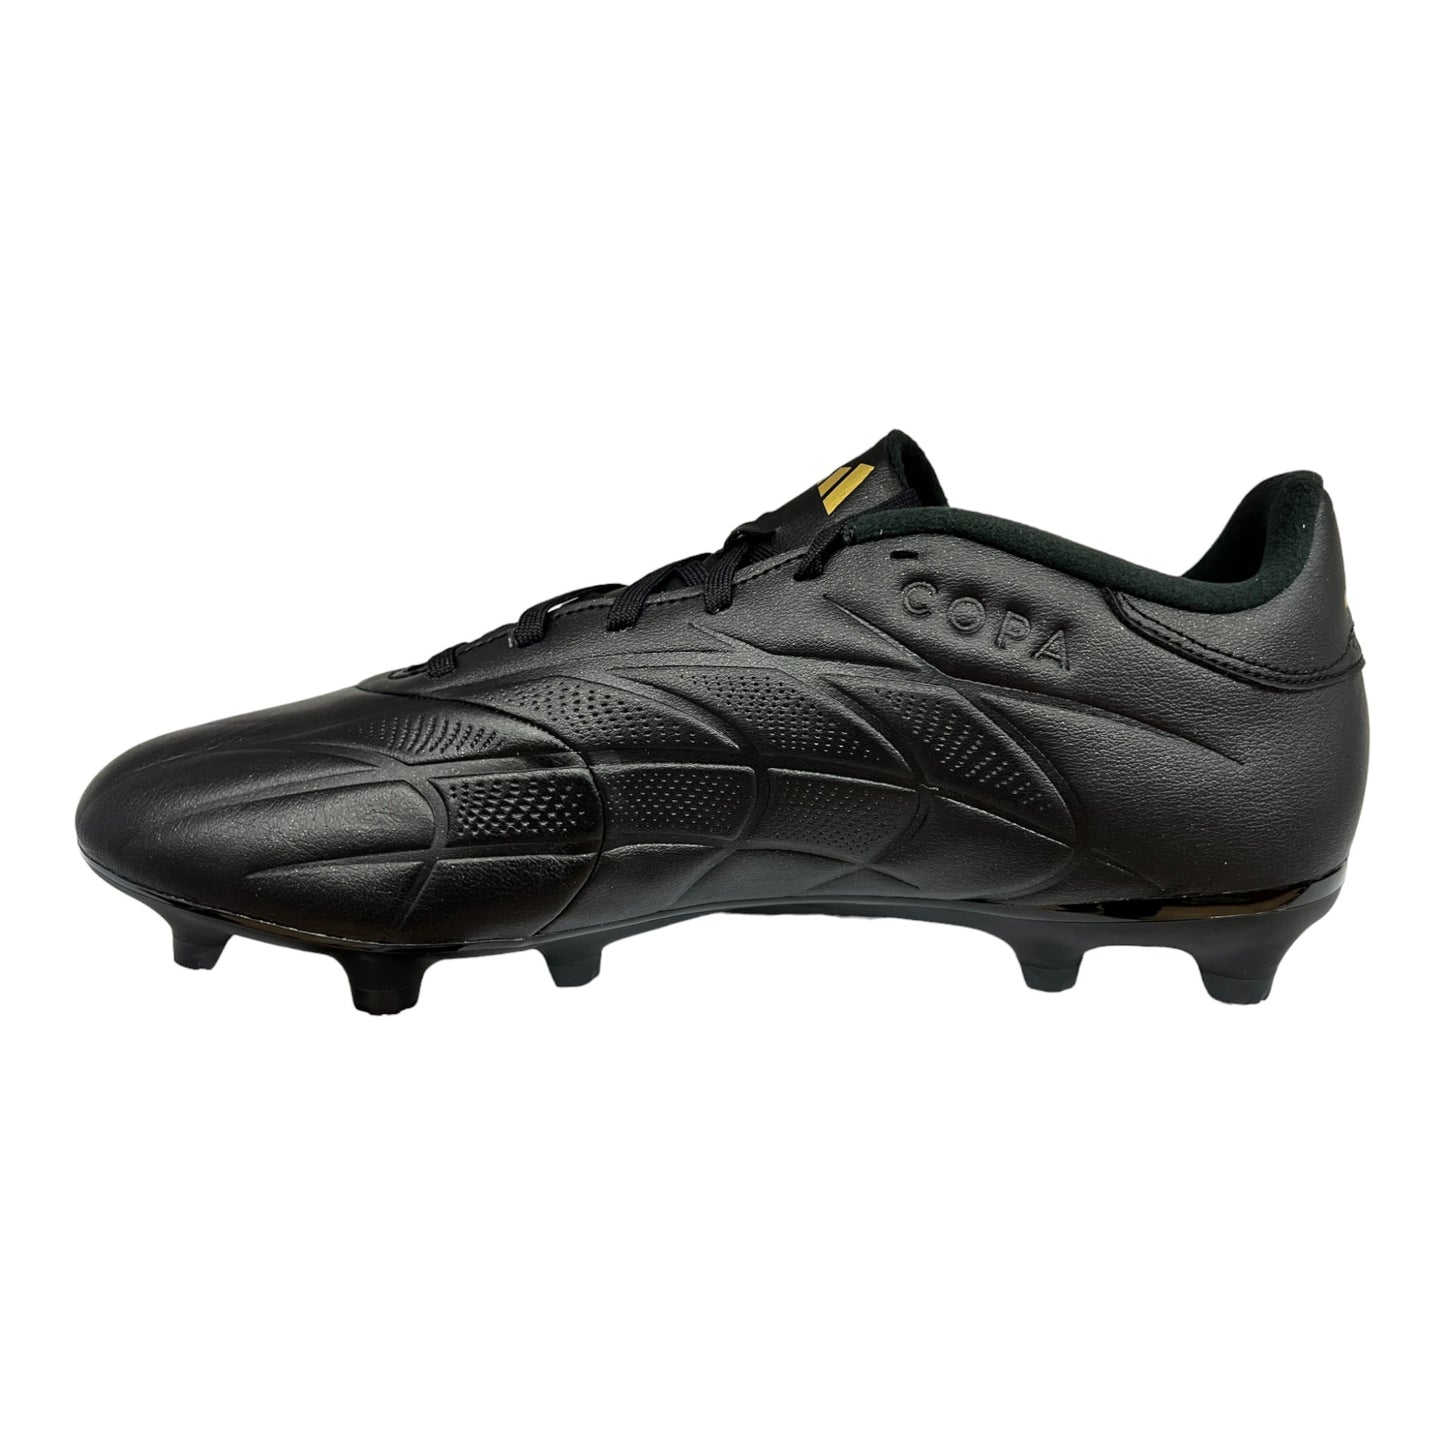 .Adidas Men's COPA PURE II BOOTS  Black/Carbon/Gold - (IG8717) - BU2 - R2L17